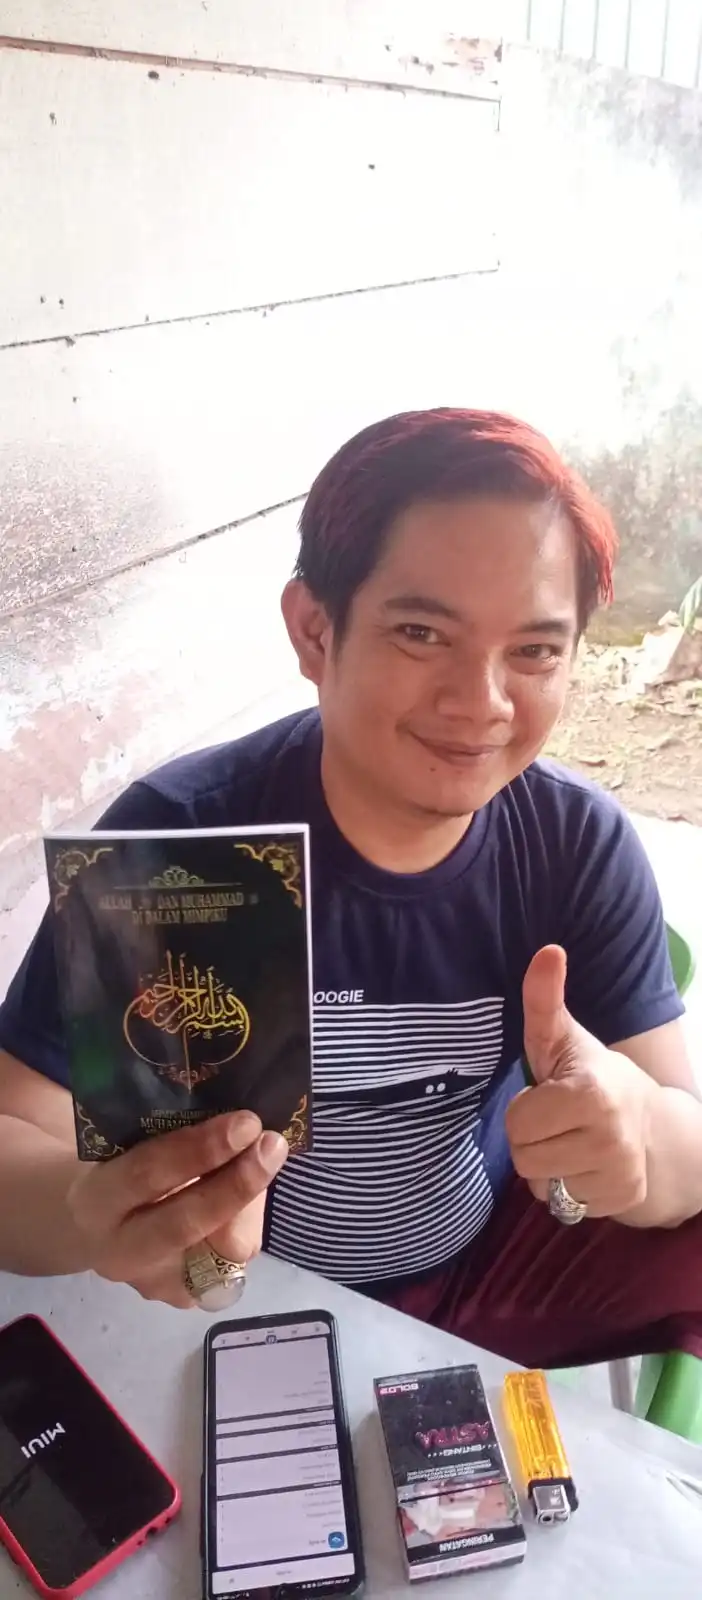 Helper Muhammad Qasim di Palembang, Berikan Buku Kumpulan Mimpi kepada Teman yang Berkunjung ke Rumah